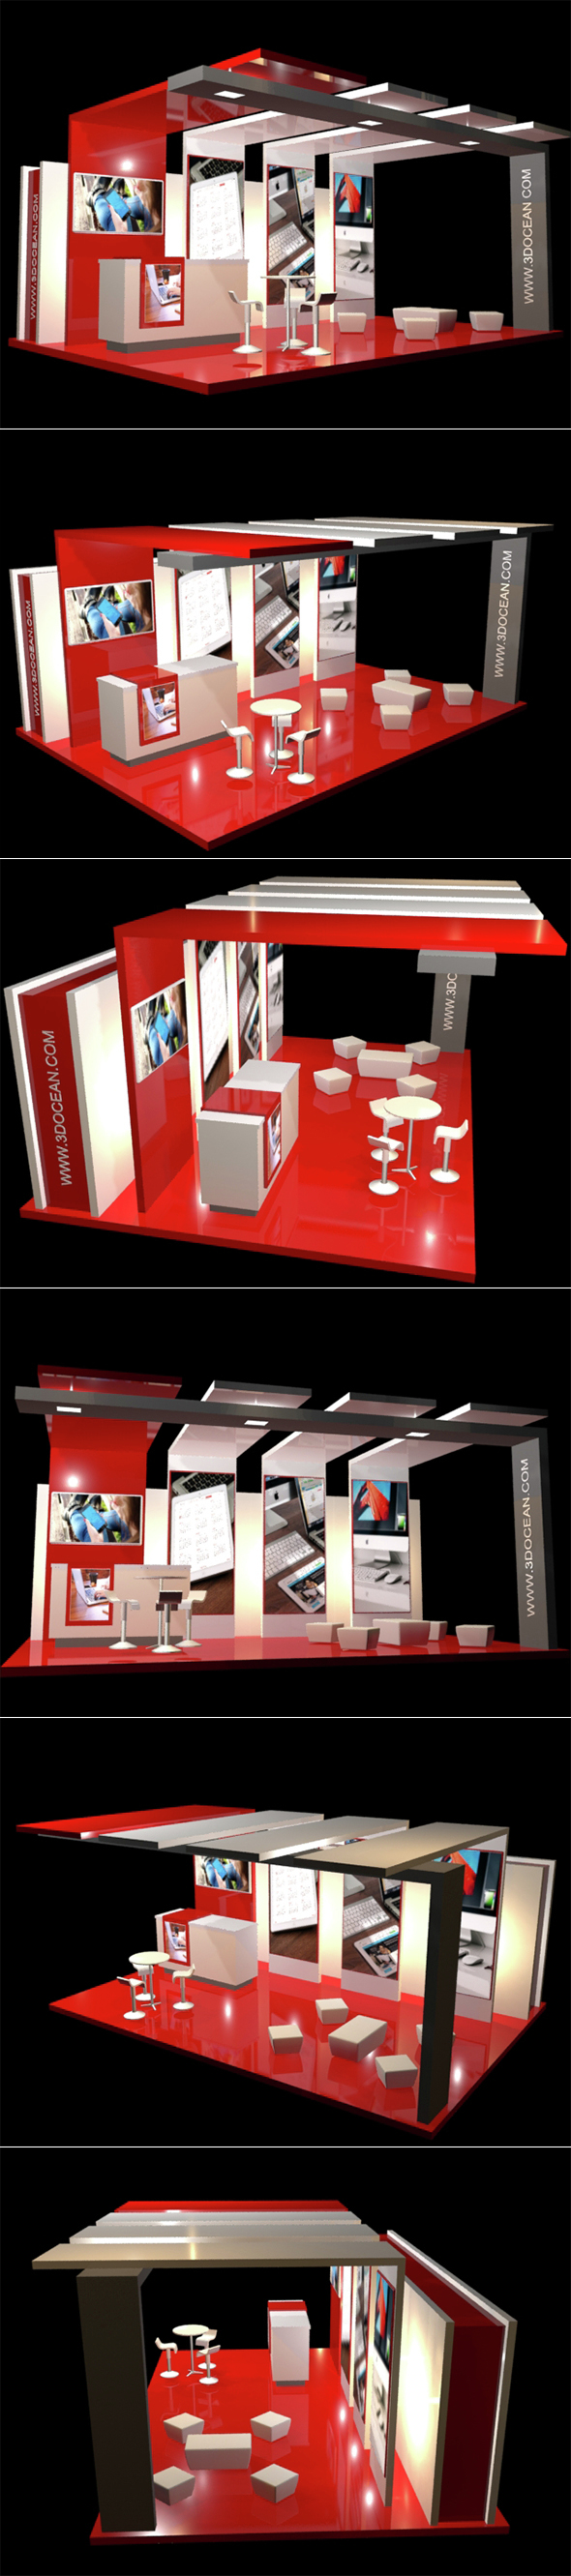 Modern Exhibition Stand - 3Docean 15250115